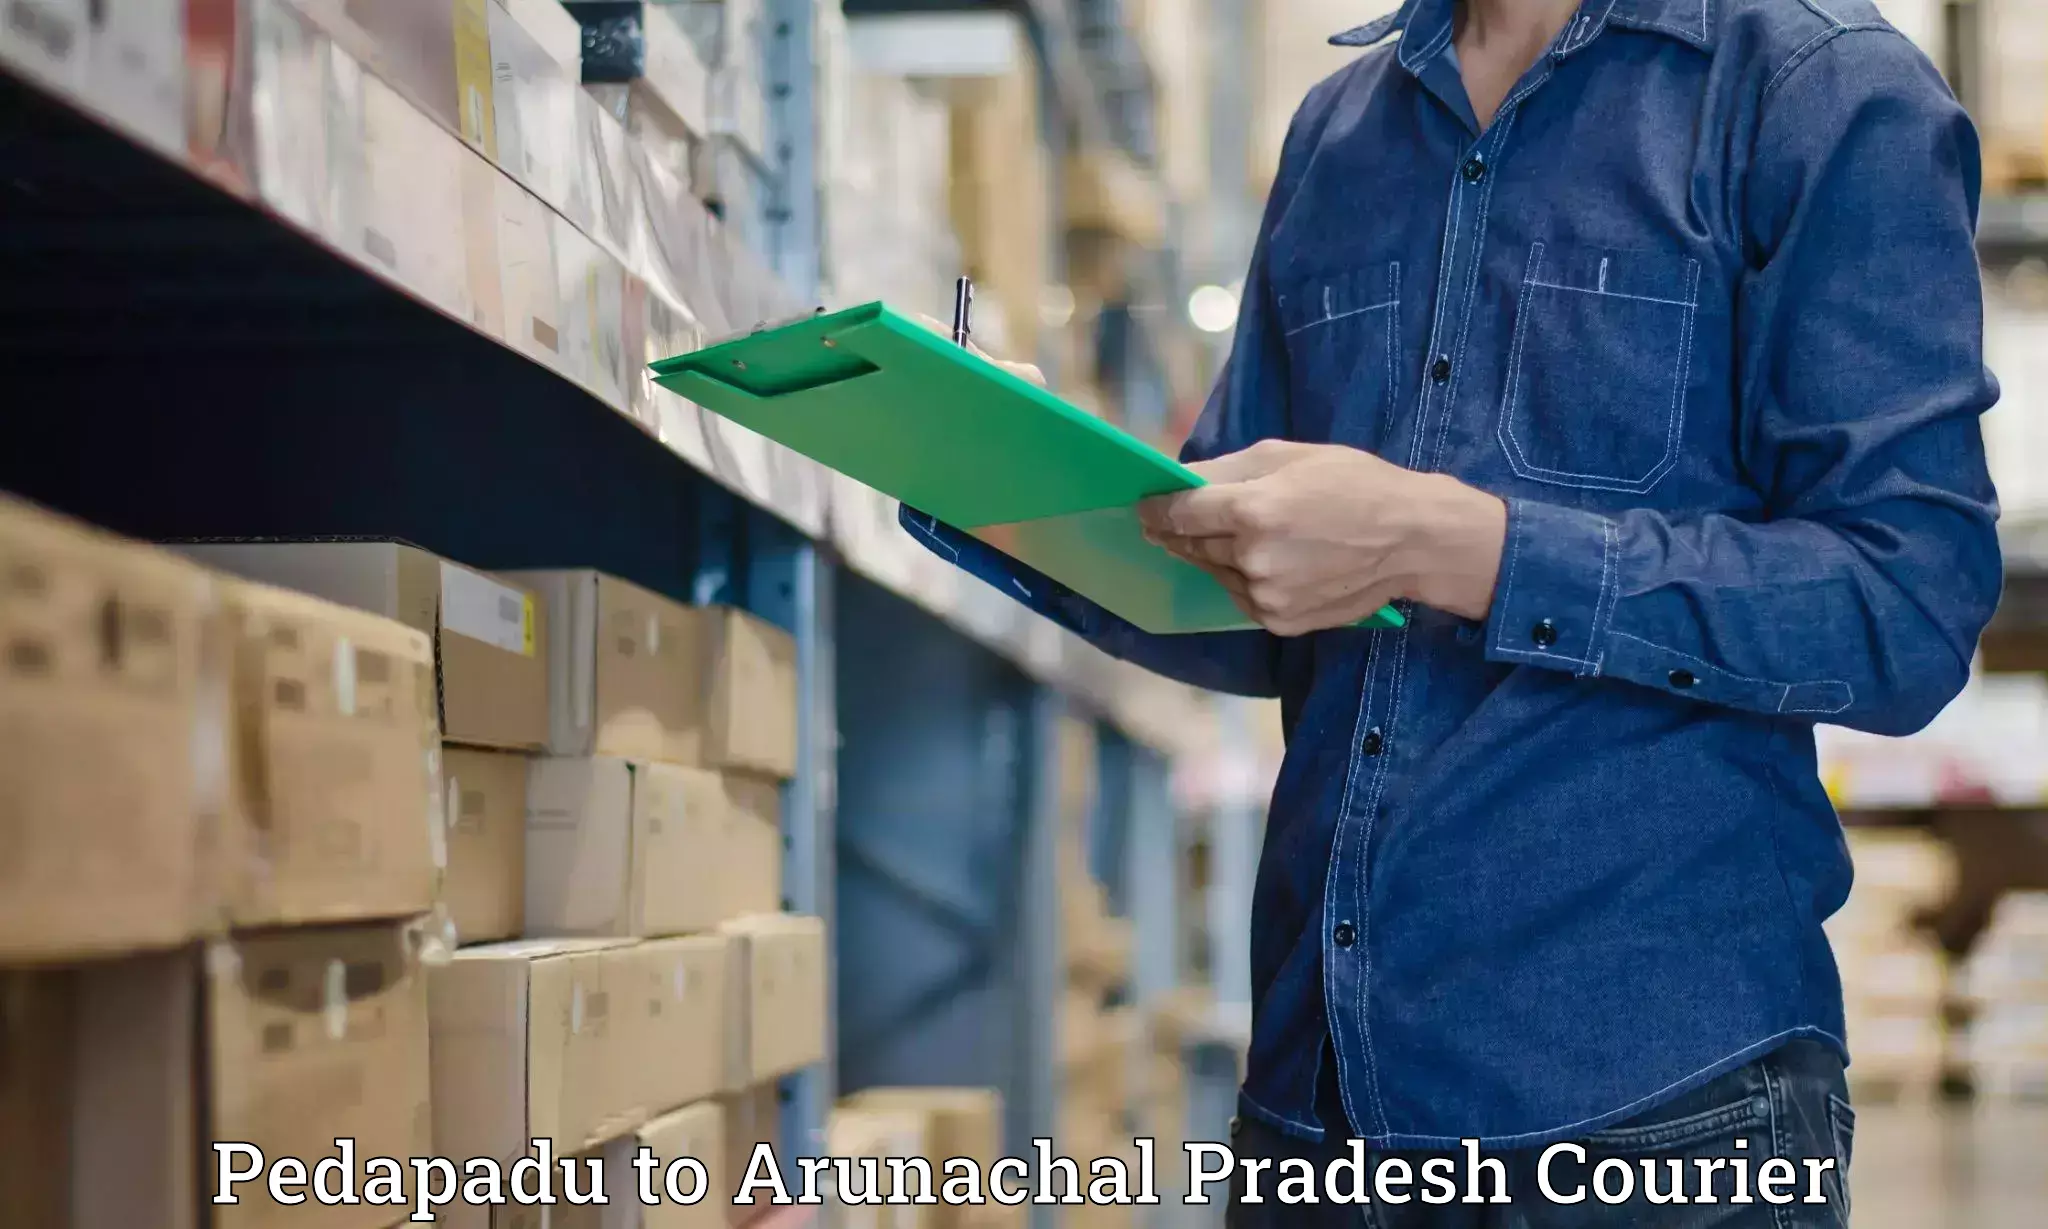 Urban courier service Pedapadu to Arunachal Pradesh